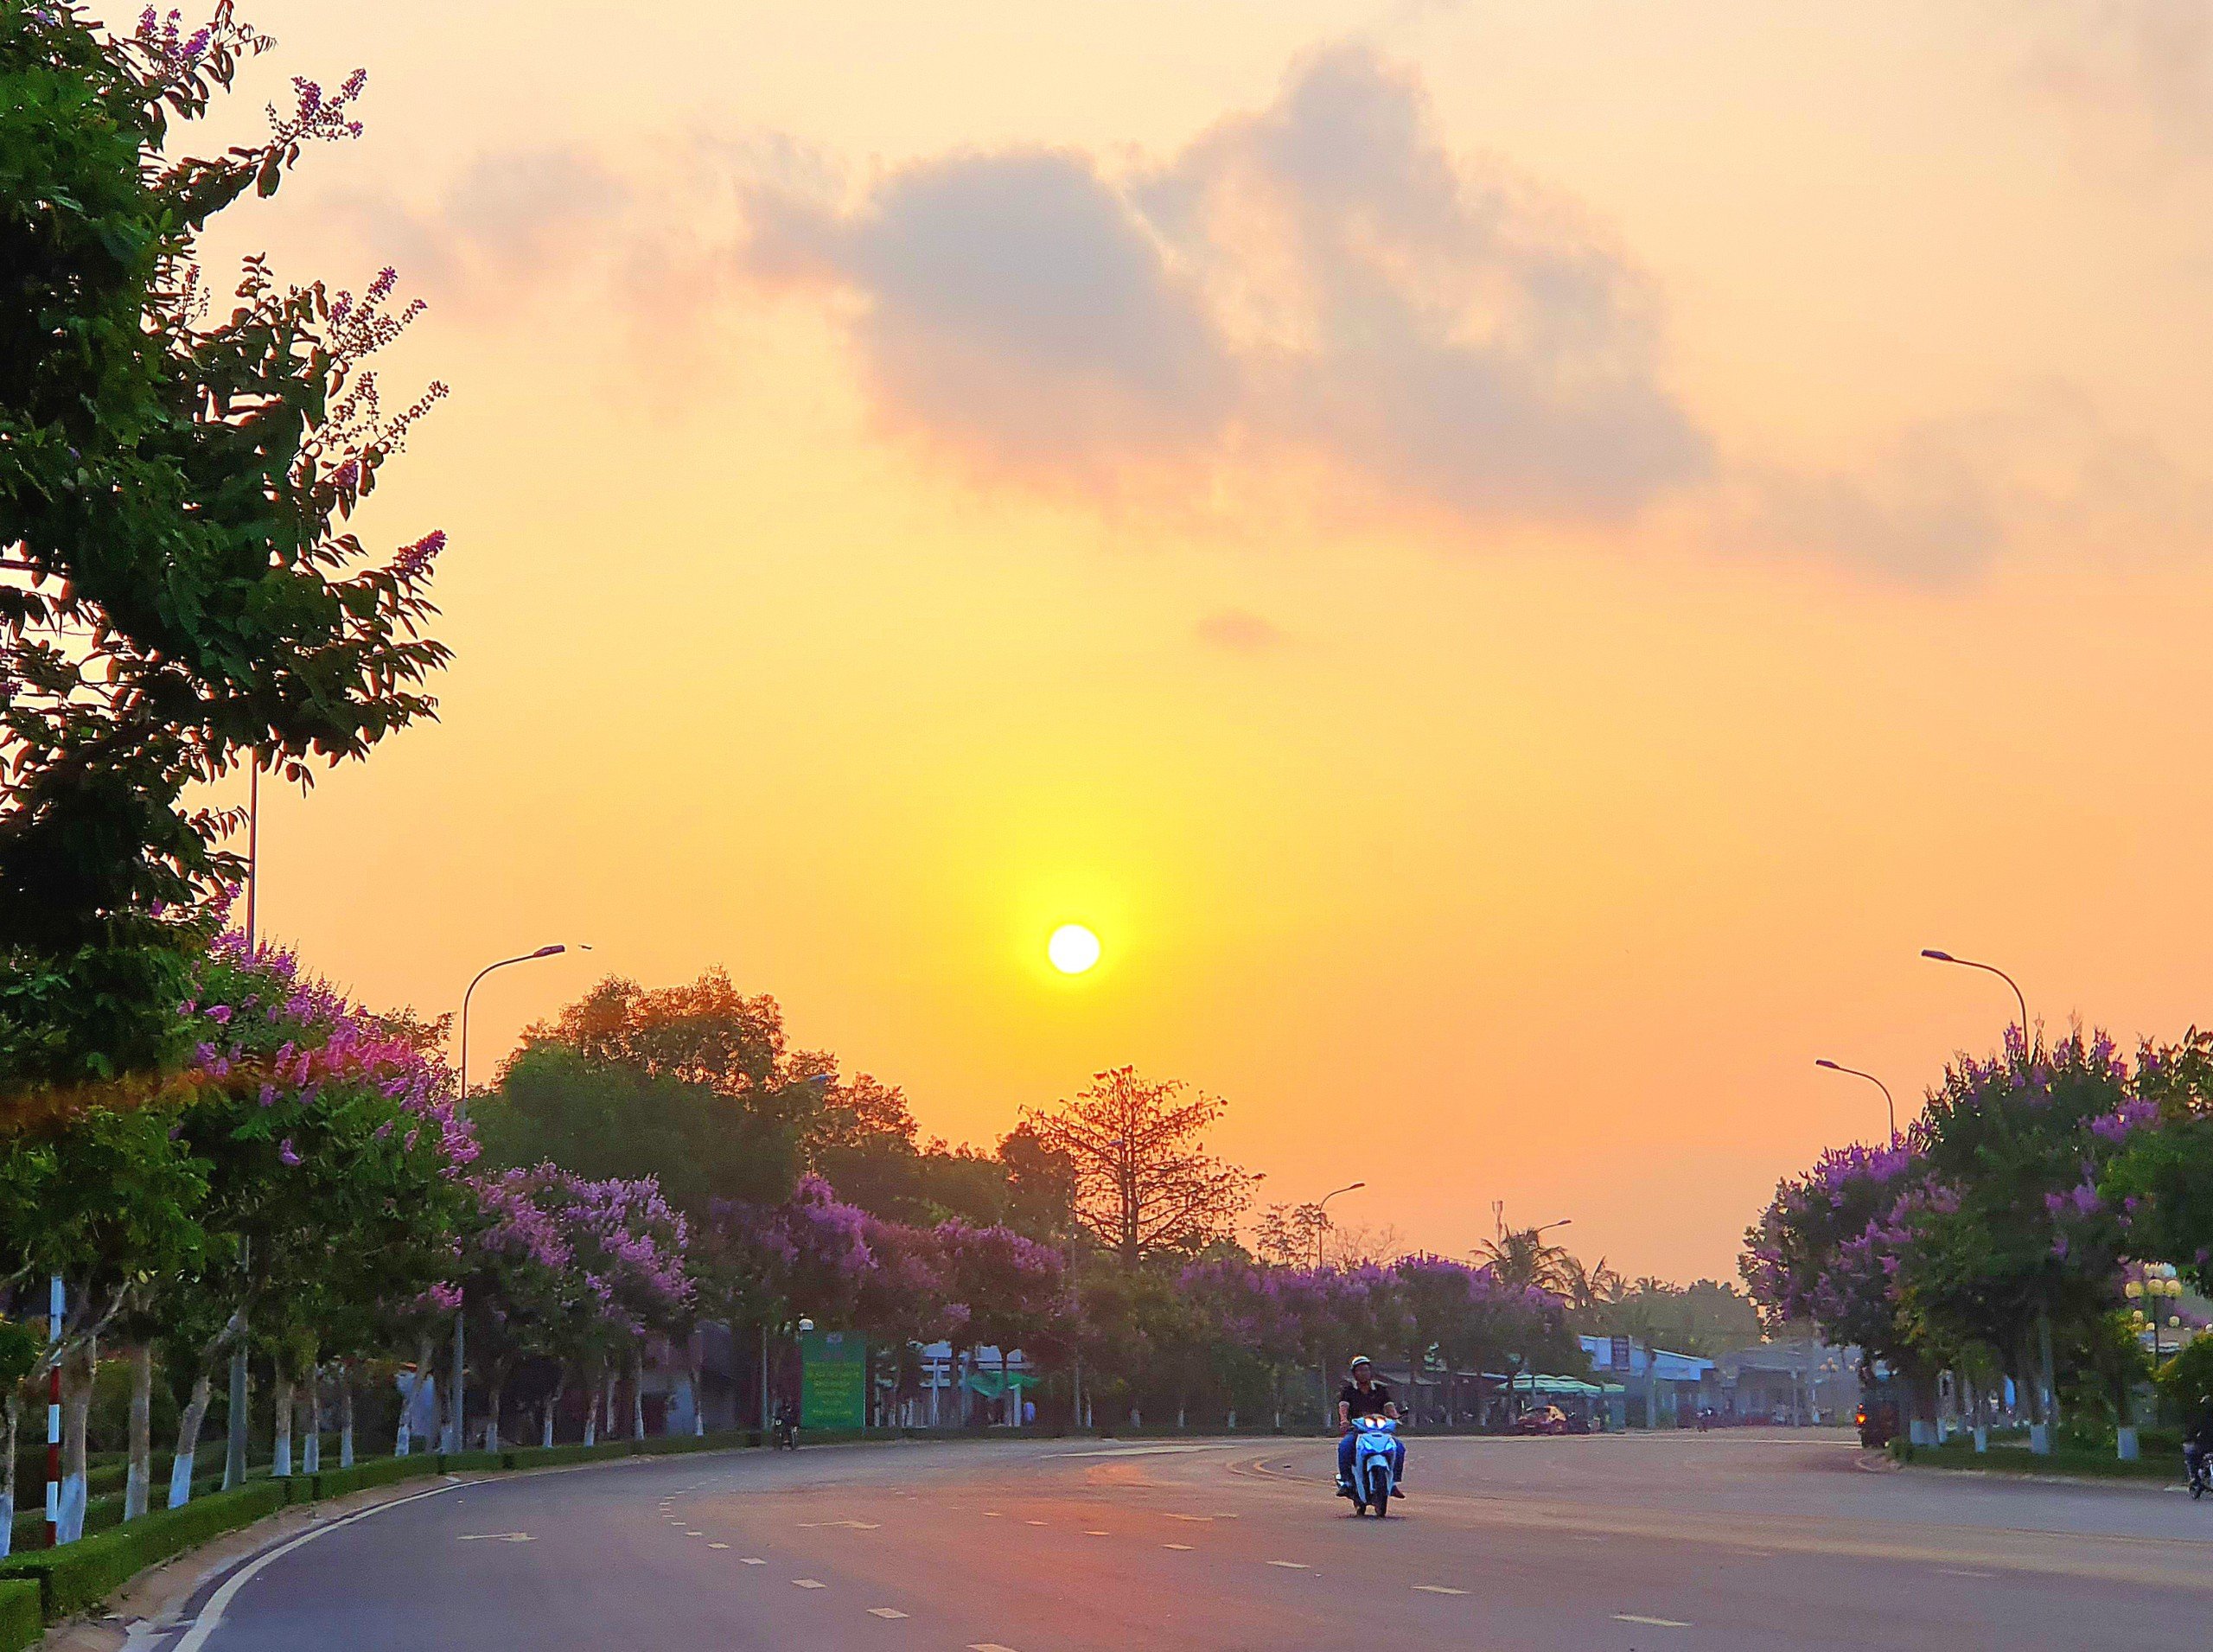 Thời điểm bình minh ló dạng làm cho đường Võ Văn Kiệt rực rỡ sắc tím hoa bằng lăng trở nên thơ mộng hơn.